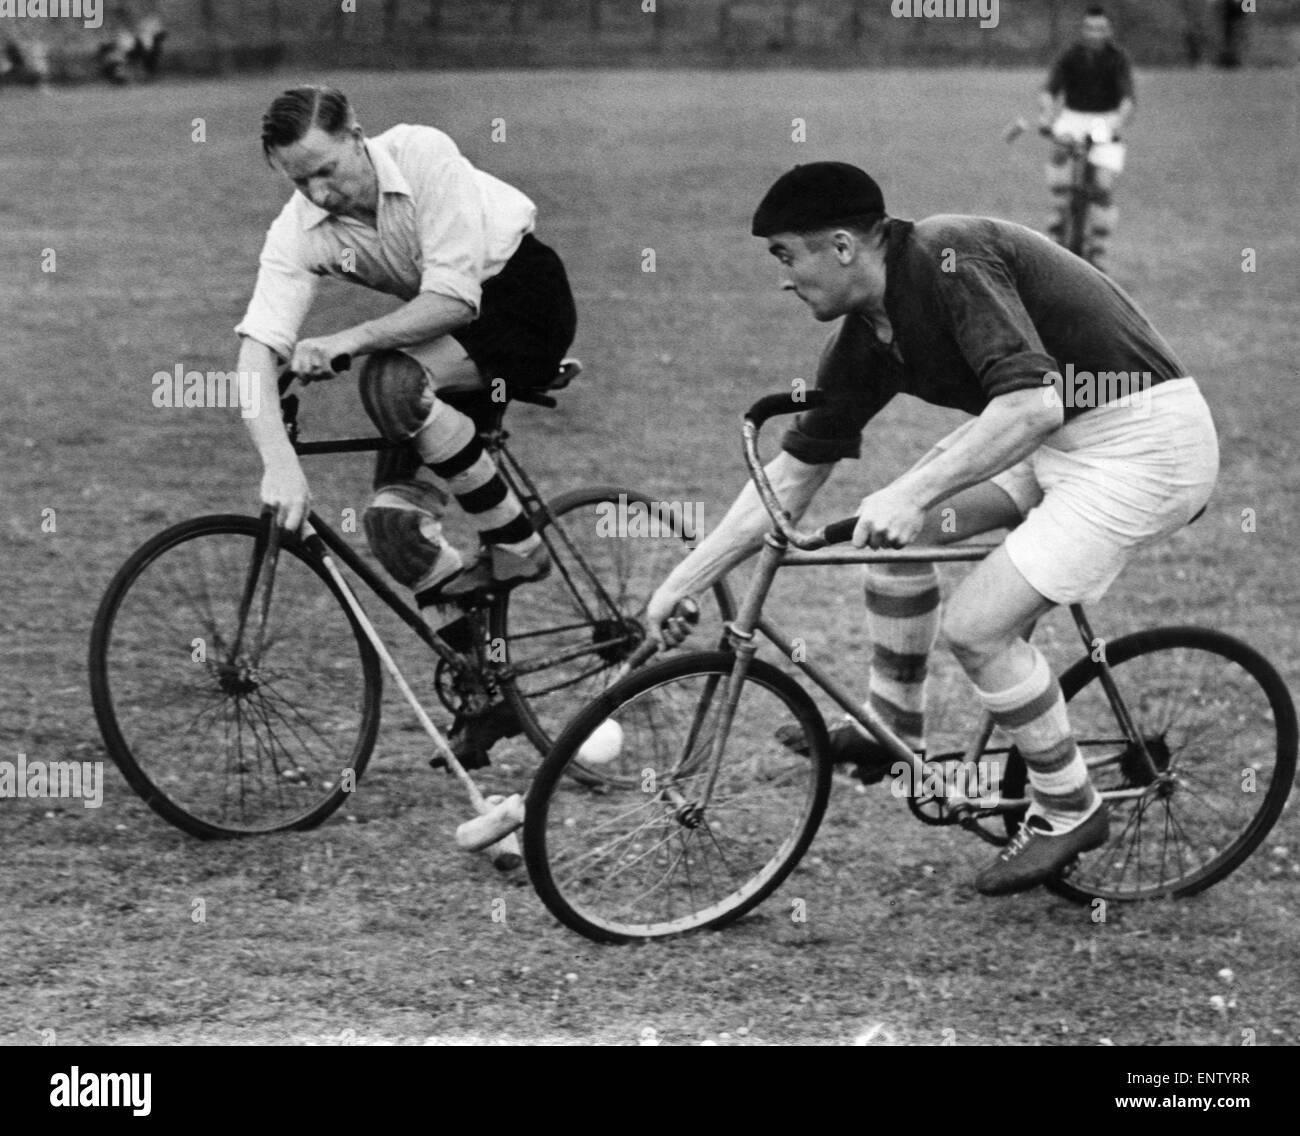 England (weißes Hemd) schlugen Frankreich im internationalen Fahrrad Polo im Silhurst Park. Unser Bild zeigt ein Englisch (weiß) klaut den Ball von Franzosen in ein Fahrrad. Juli 1946 P032972 Stockfoto